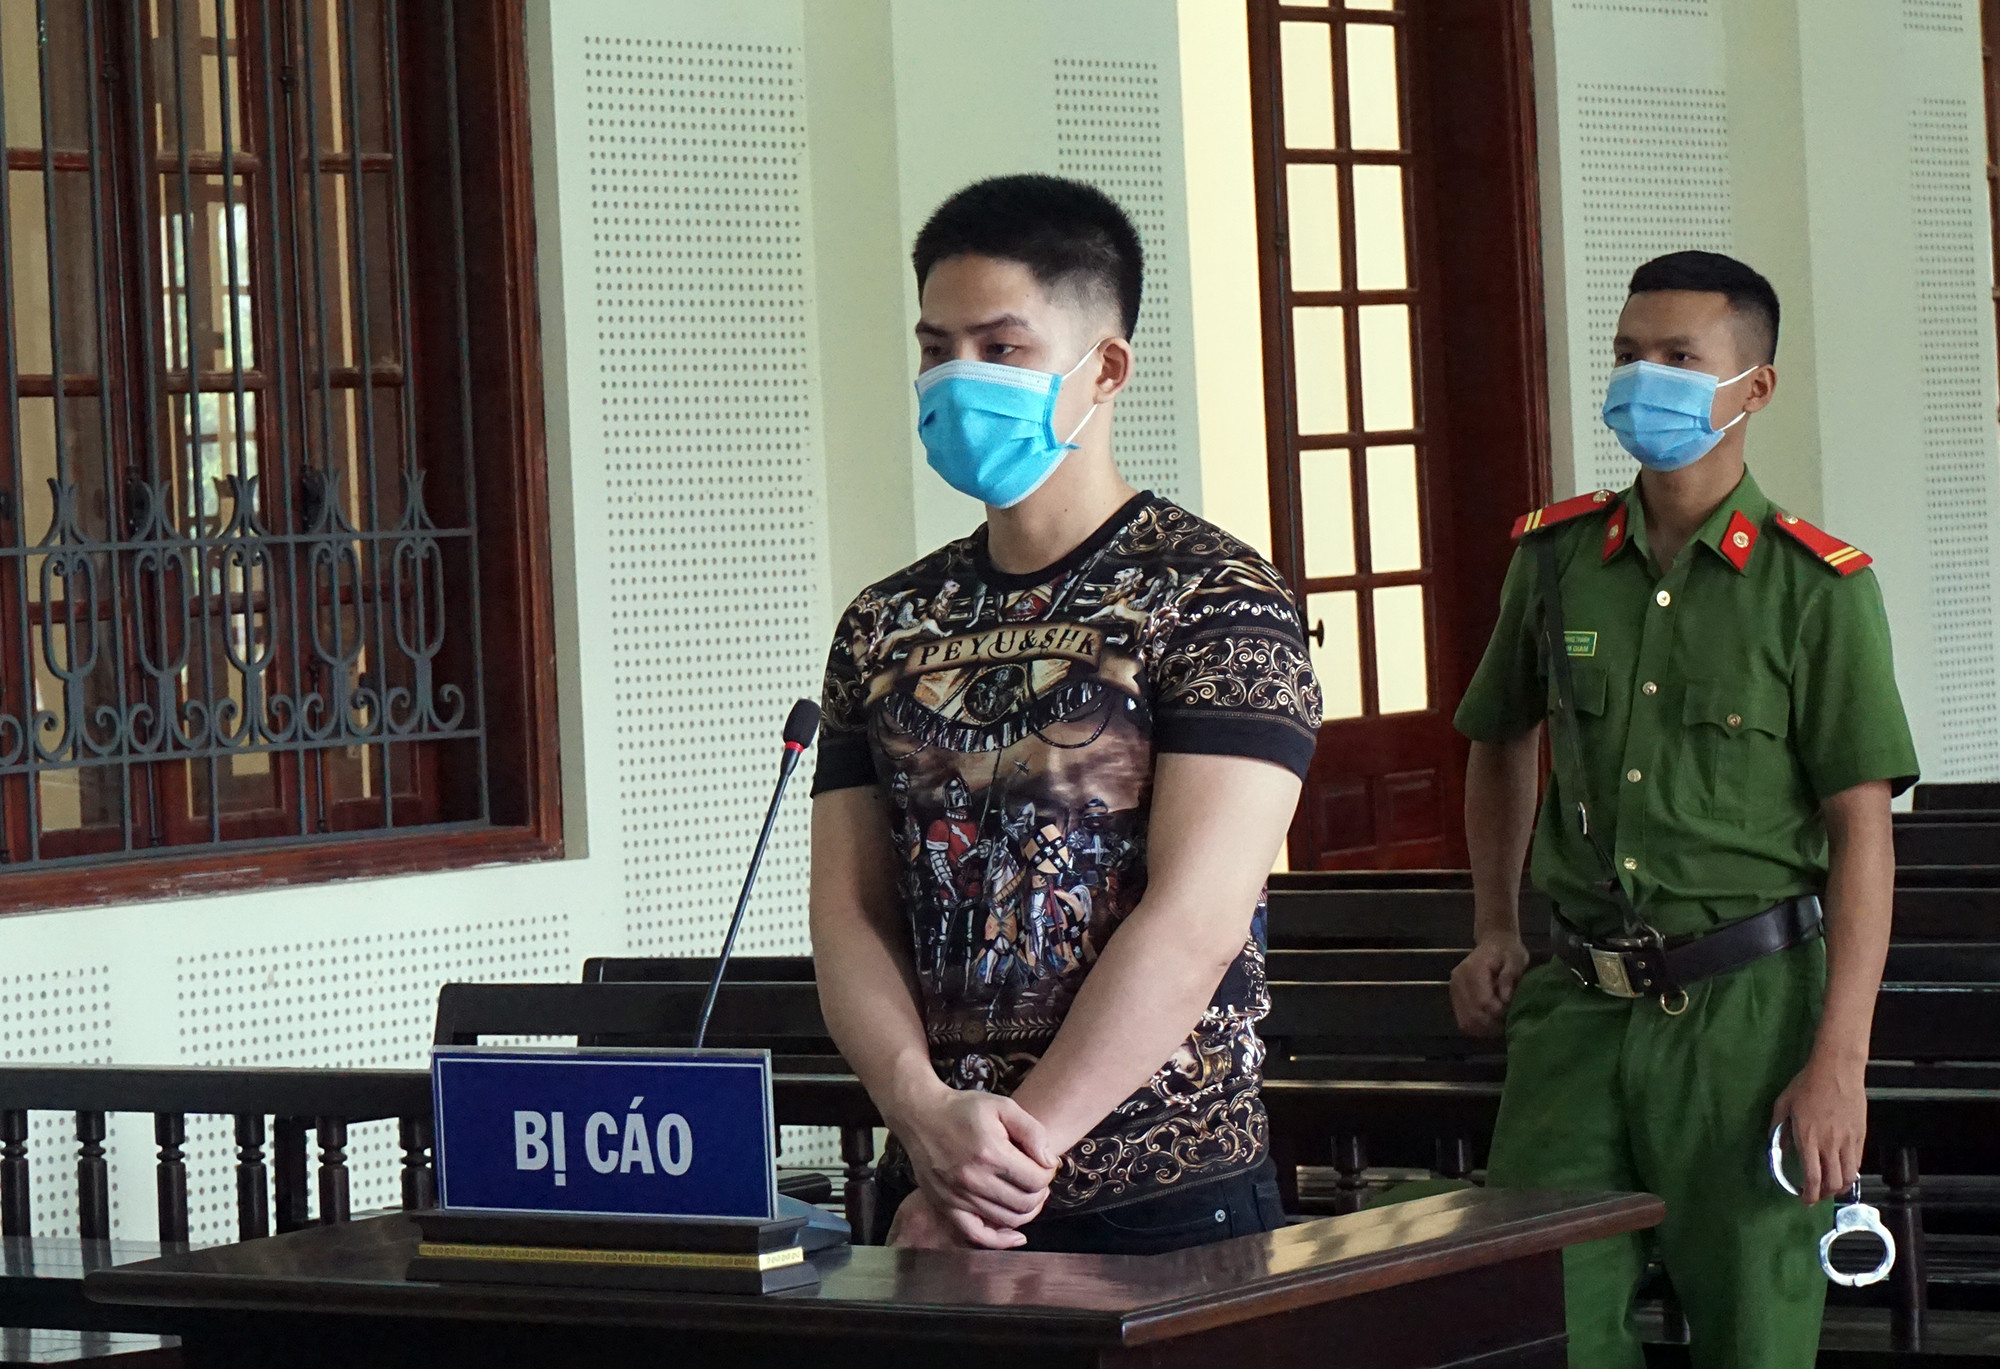 Phạm tội thuộc trường hợp tái phạm nguy hiểm, Nguyễn Văn Công bị TAND tỉnh Nghệ An tuyên phạt 20 năm tù. Ảnh: Trần Vũ